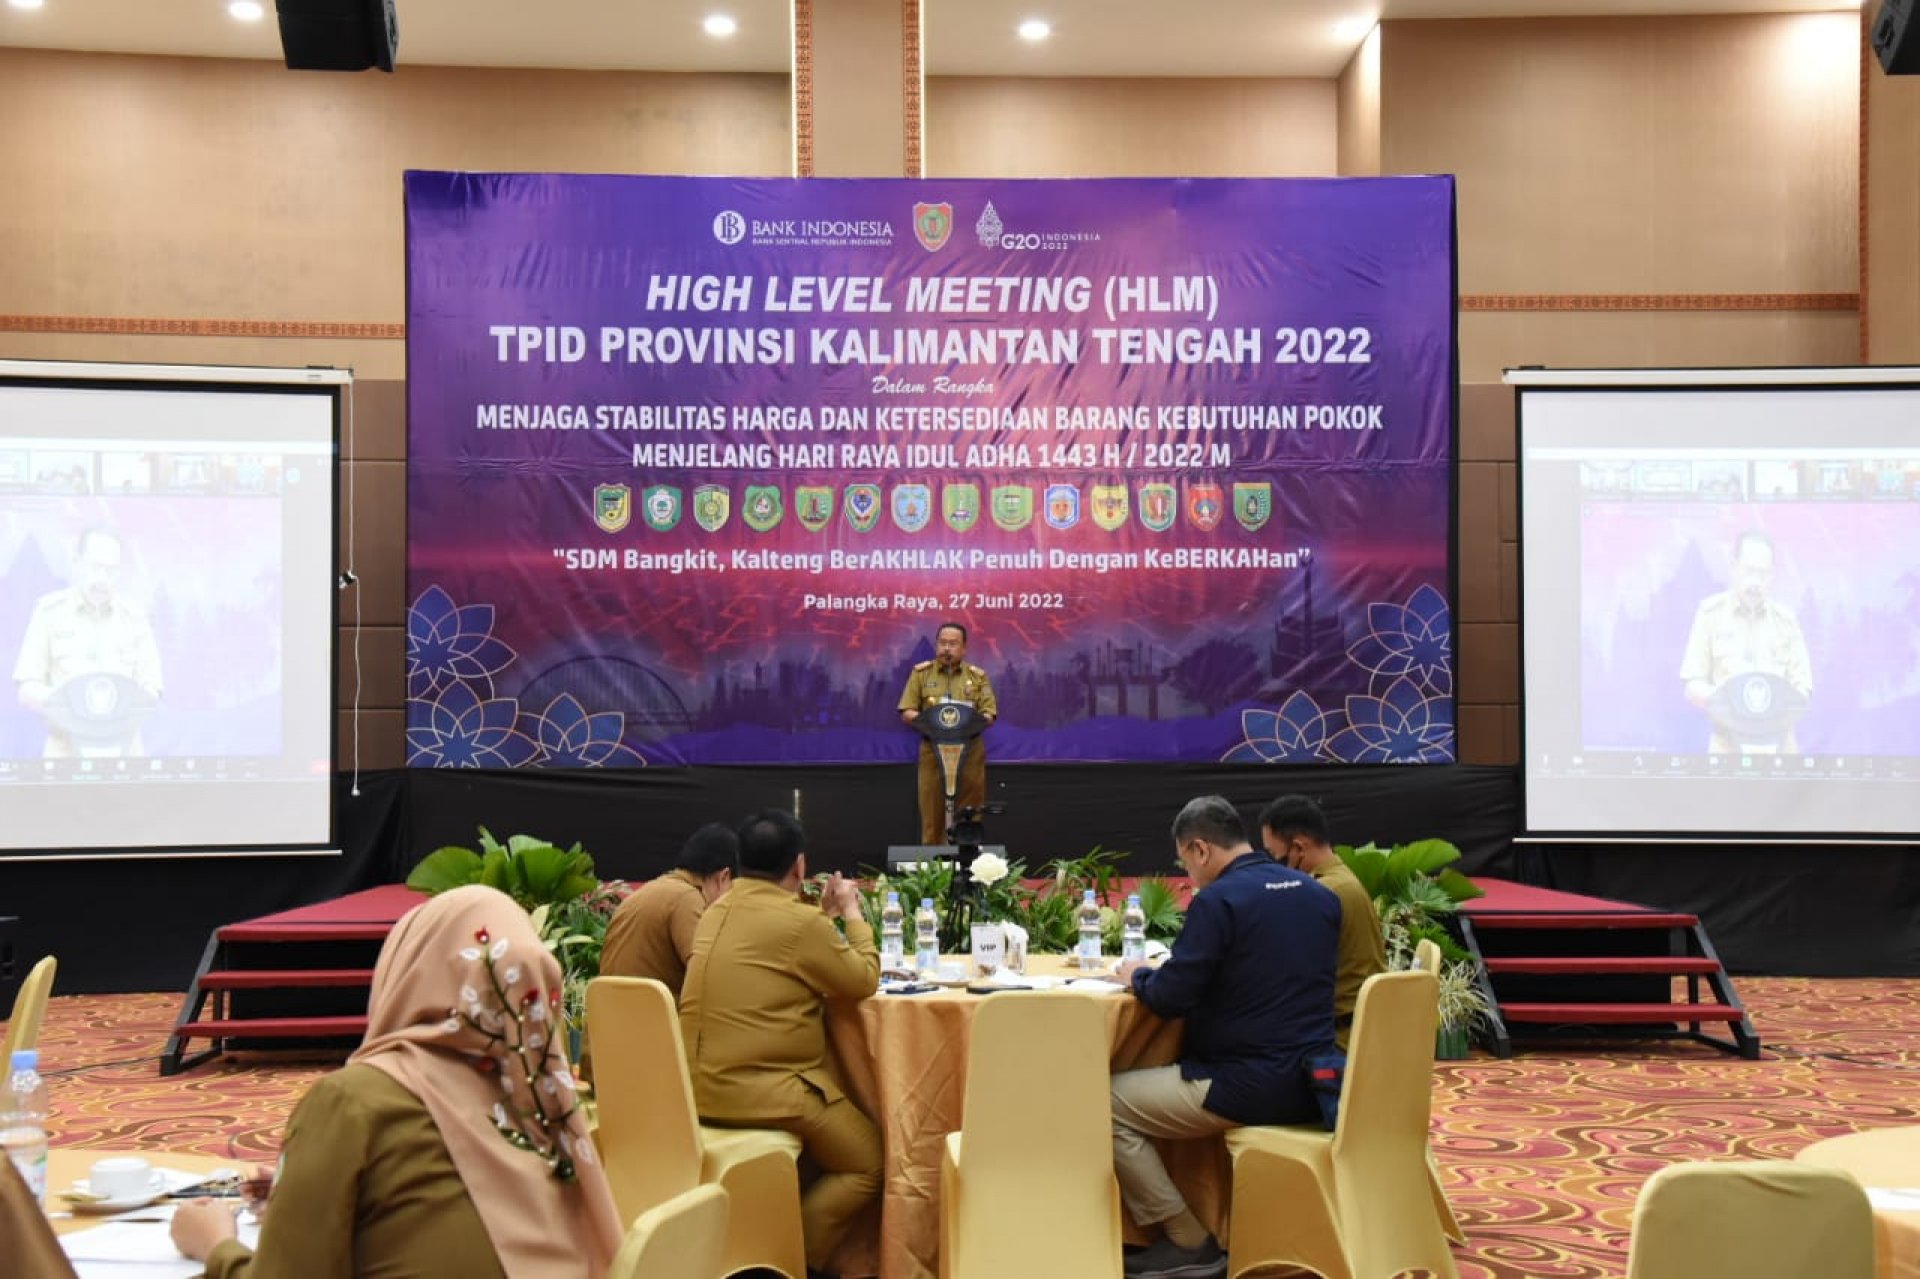 Jaga Stabilisasi Harga dan Ketersediaan Bahan Pokok Jelang Iduladha, Pemprov Kalteng dan BI Perwakilan Gelar High Level Meeting TPID